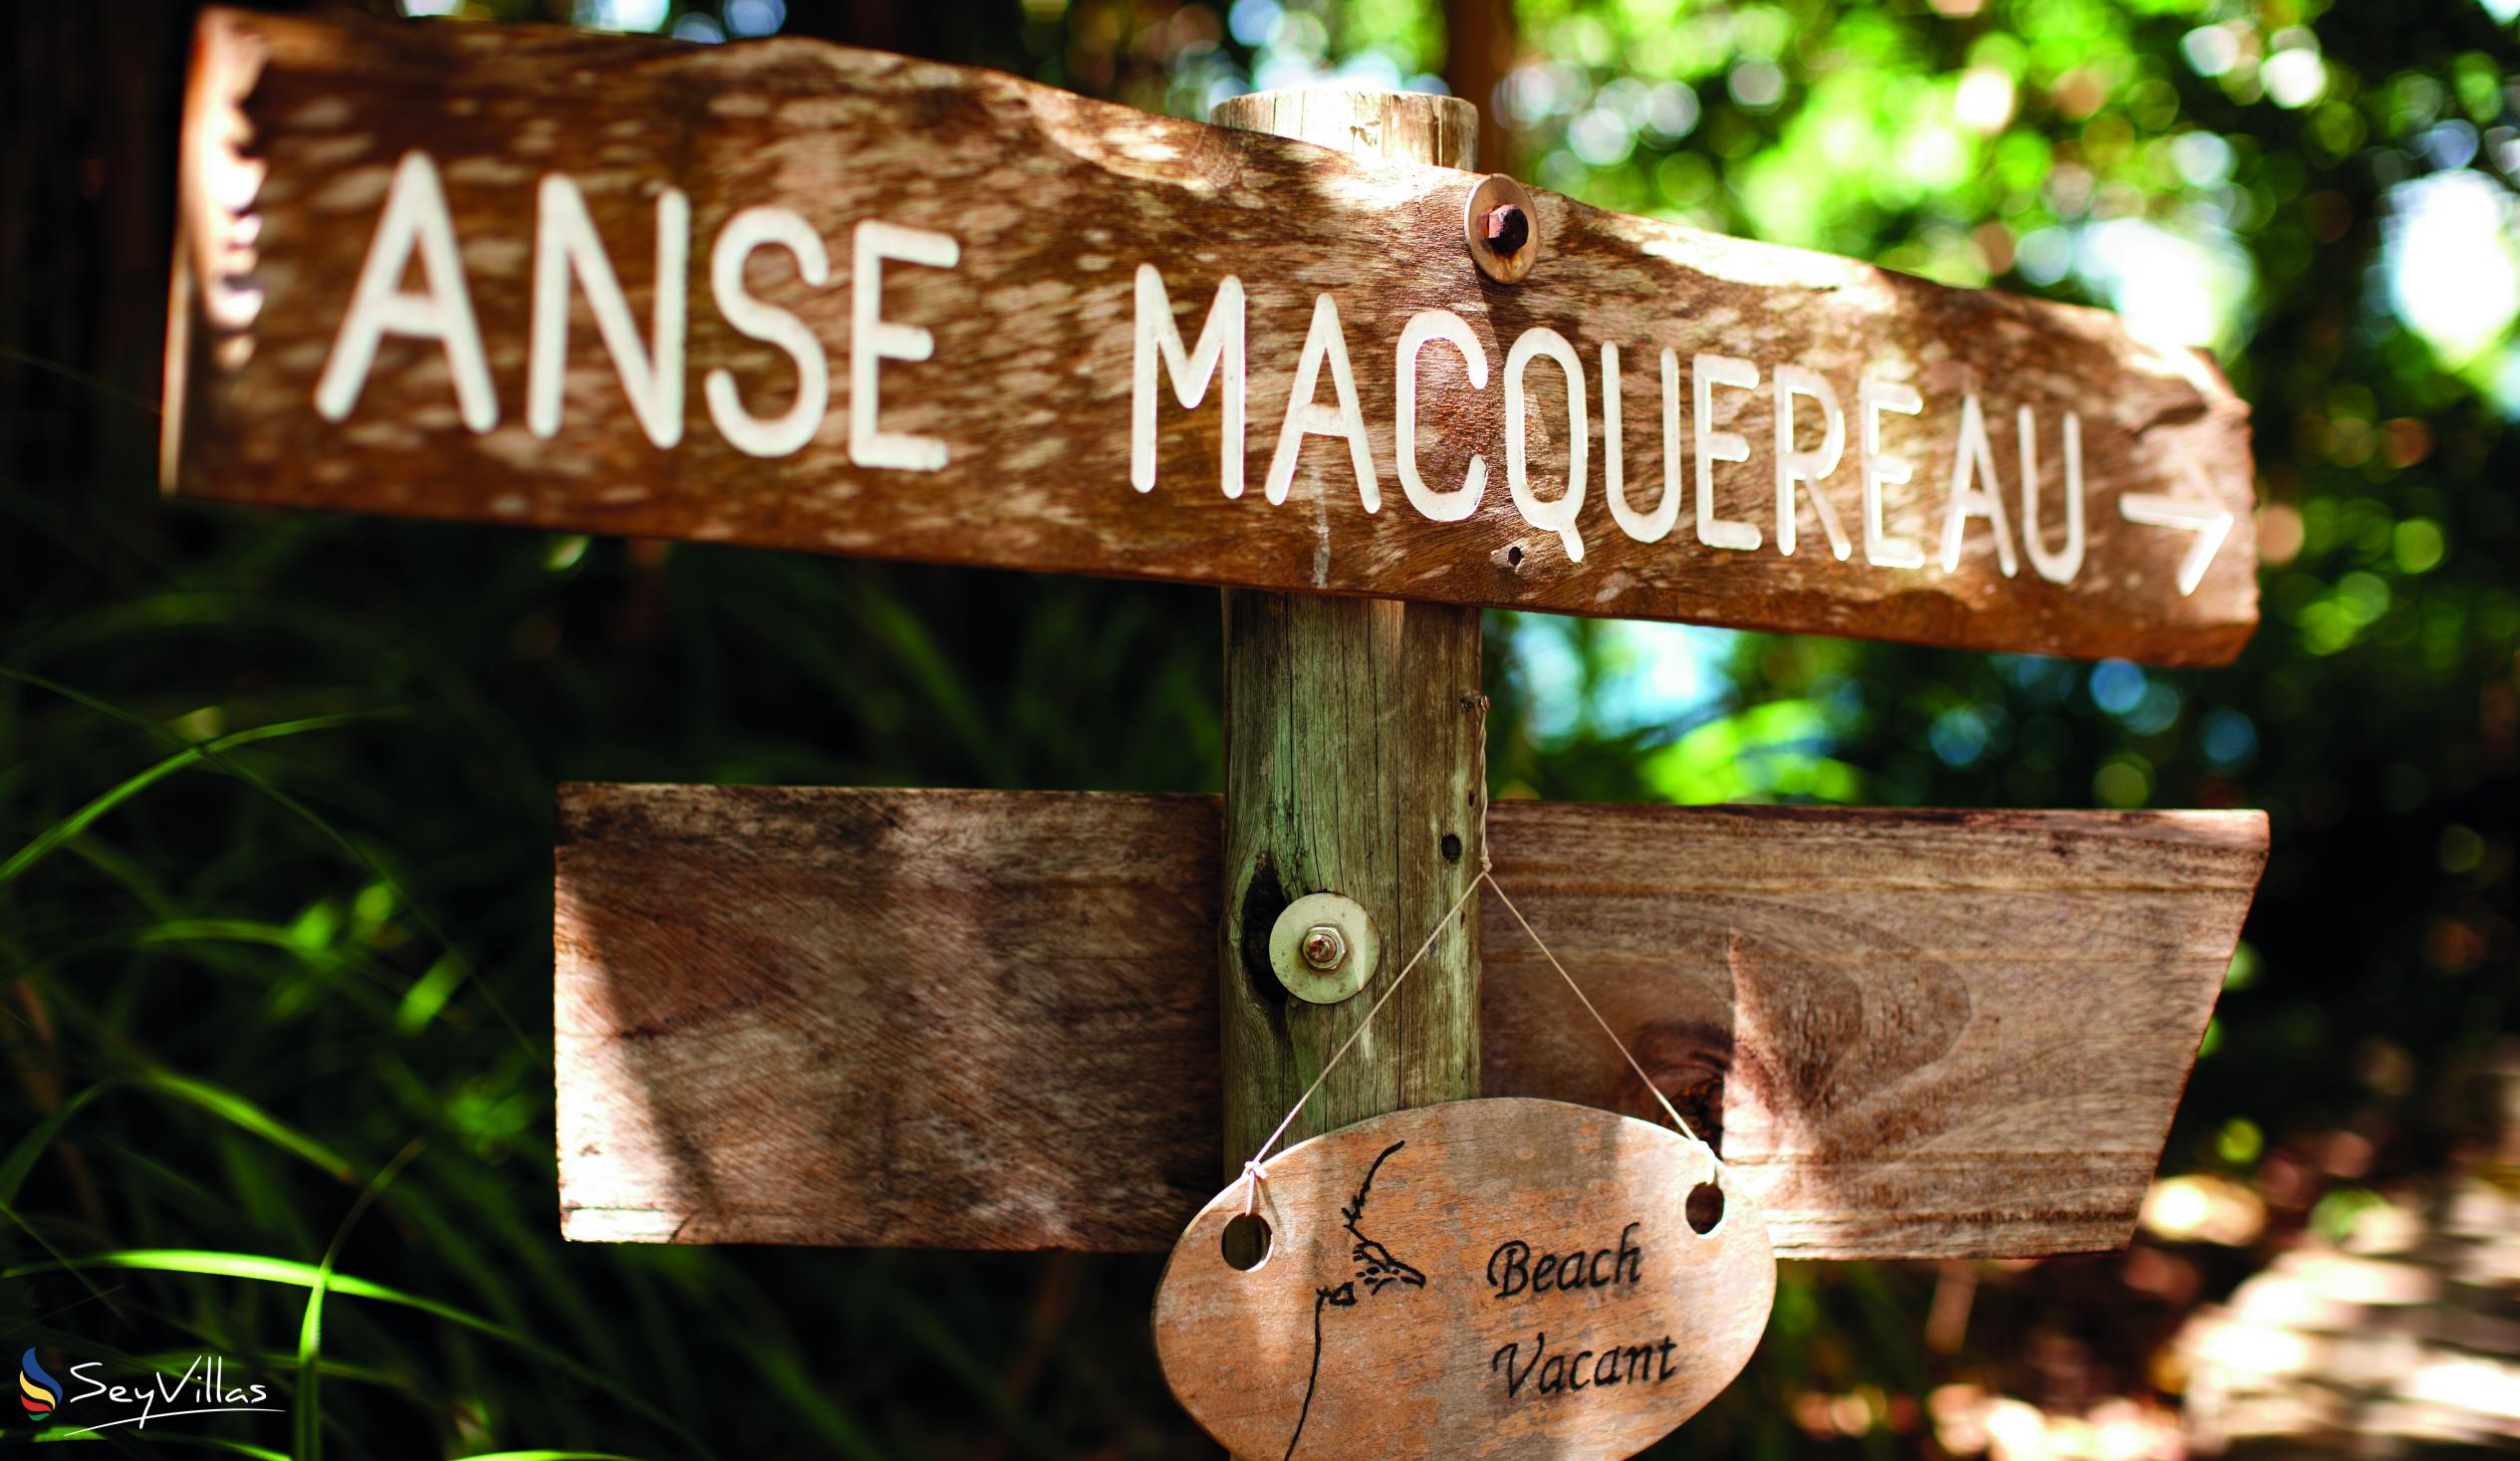 Foto 2: Anse Maquereau - Frégate - Altre isole (Seychelles)